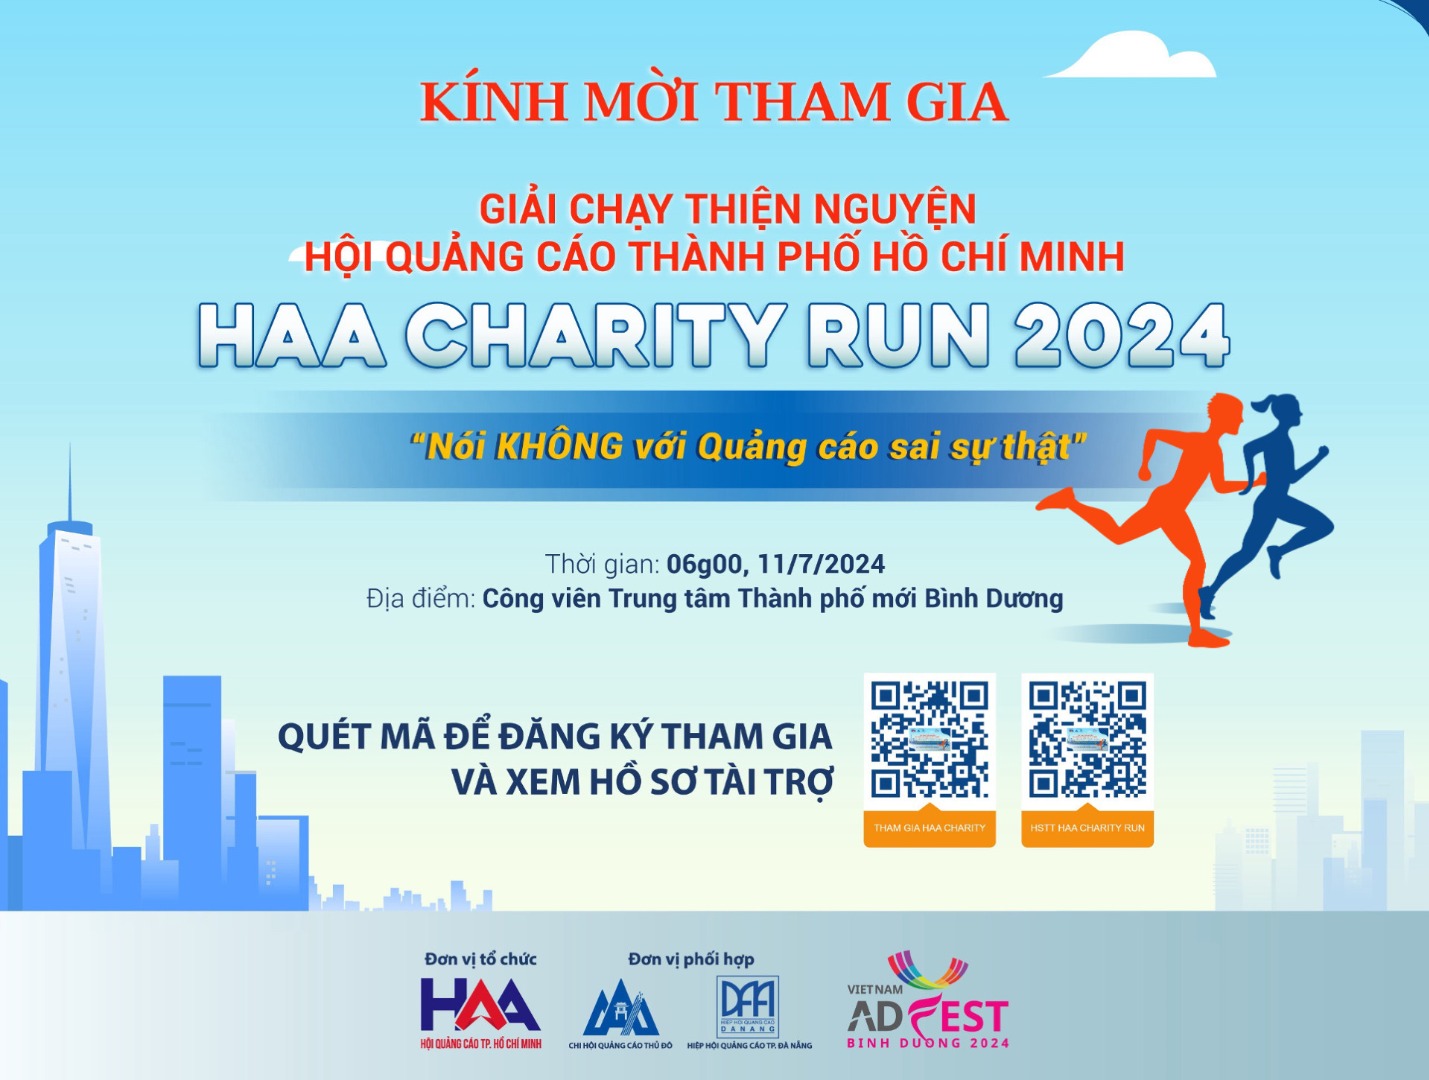 Mời tham gia “Giải chạy thiện nguyện HAA CHARITY RUN 2024: NÓI KHÔNG VỚI QUẢNG CÁO SAI SỰ THẬT”